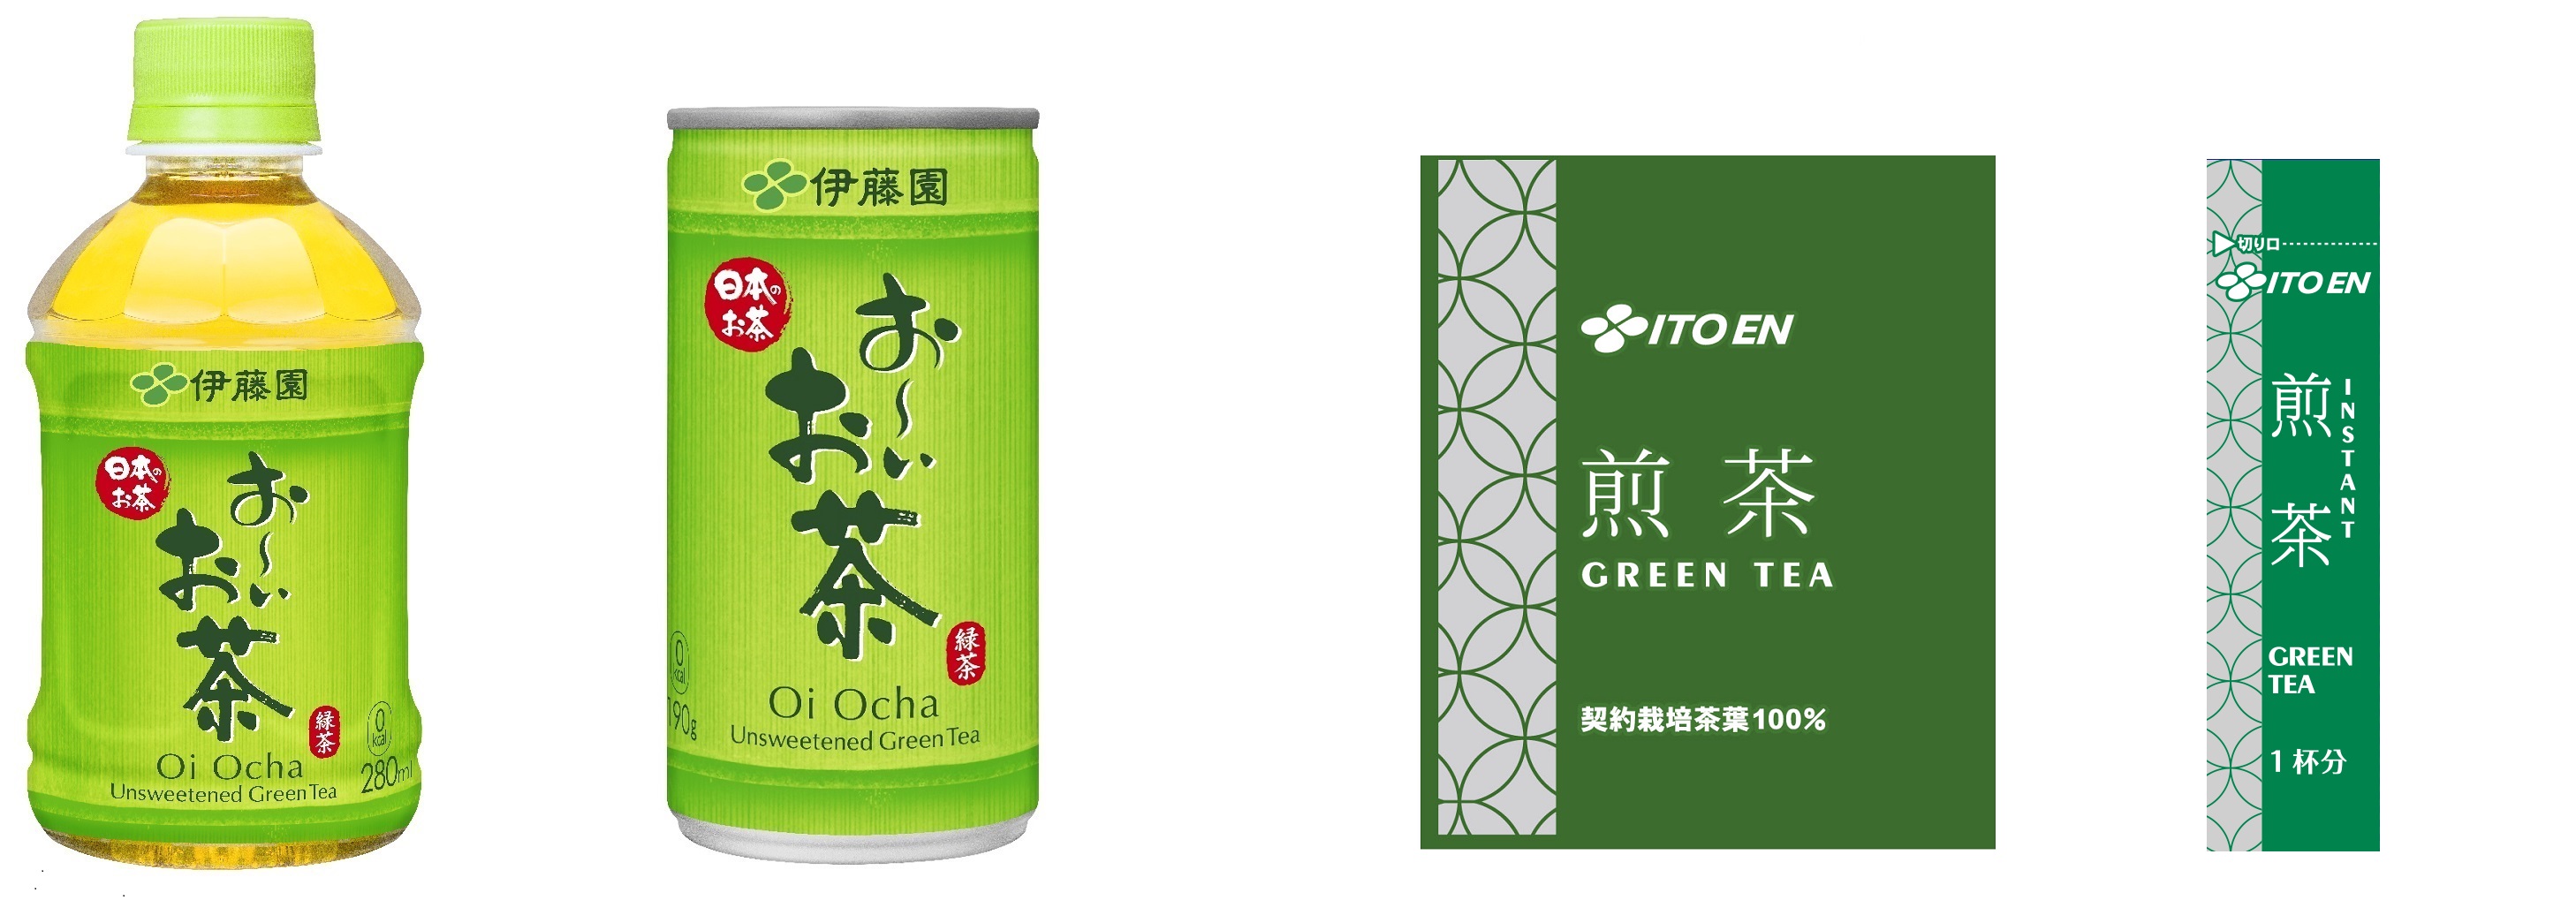 コロナ 緑茶 新型 緑茶の新型コロナ感染拡大抑制を指摘！最新研究に注目